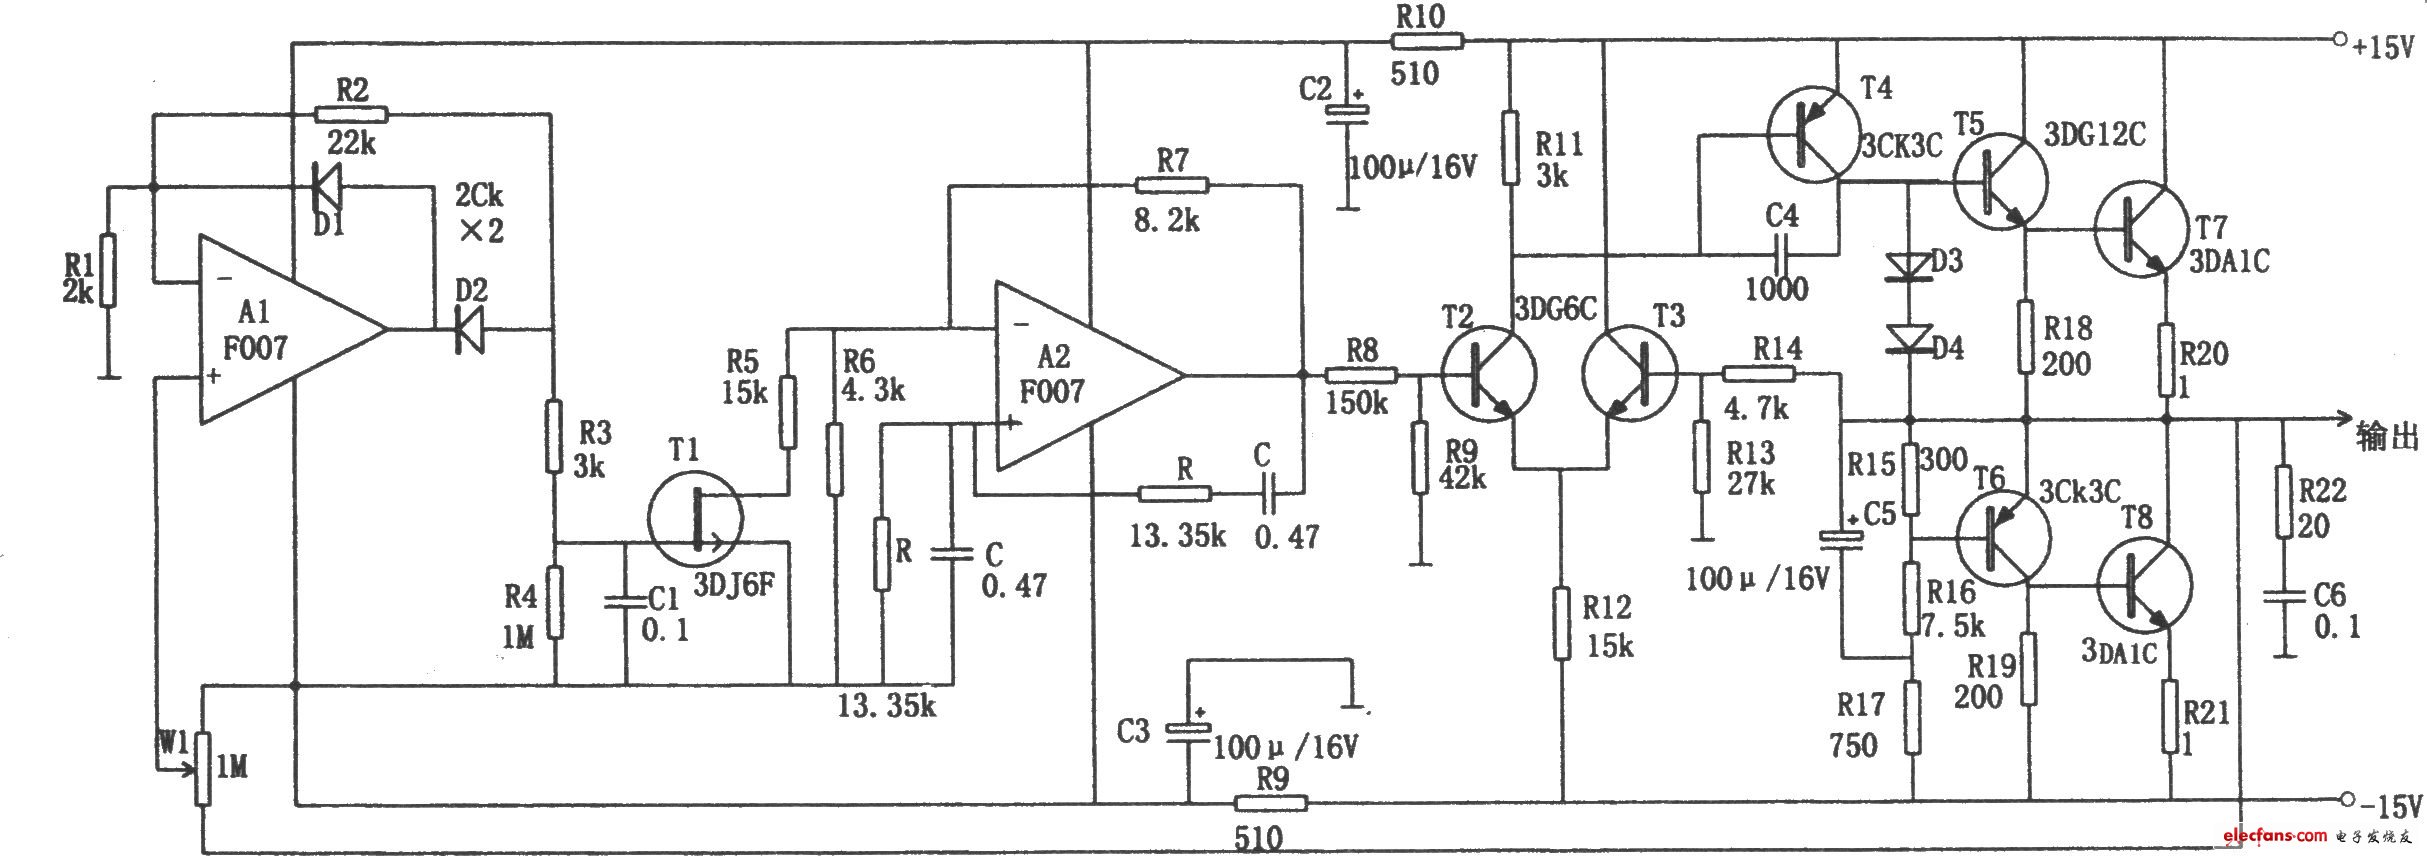 F007组成的低频信号发生器原理图